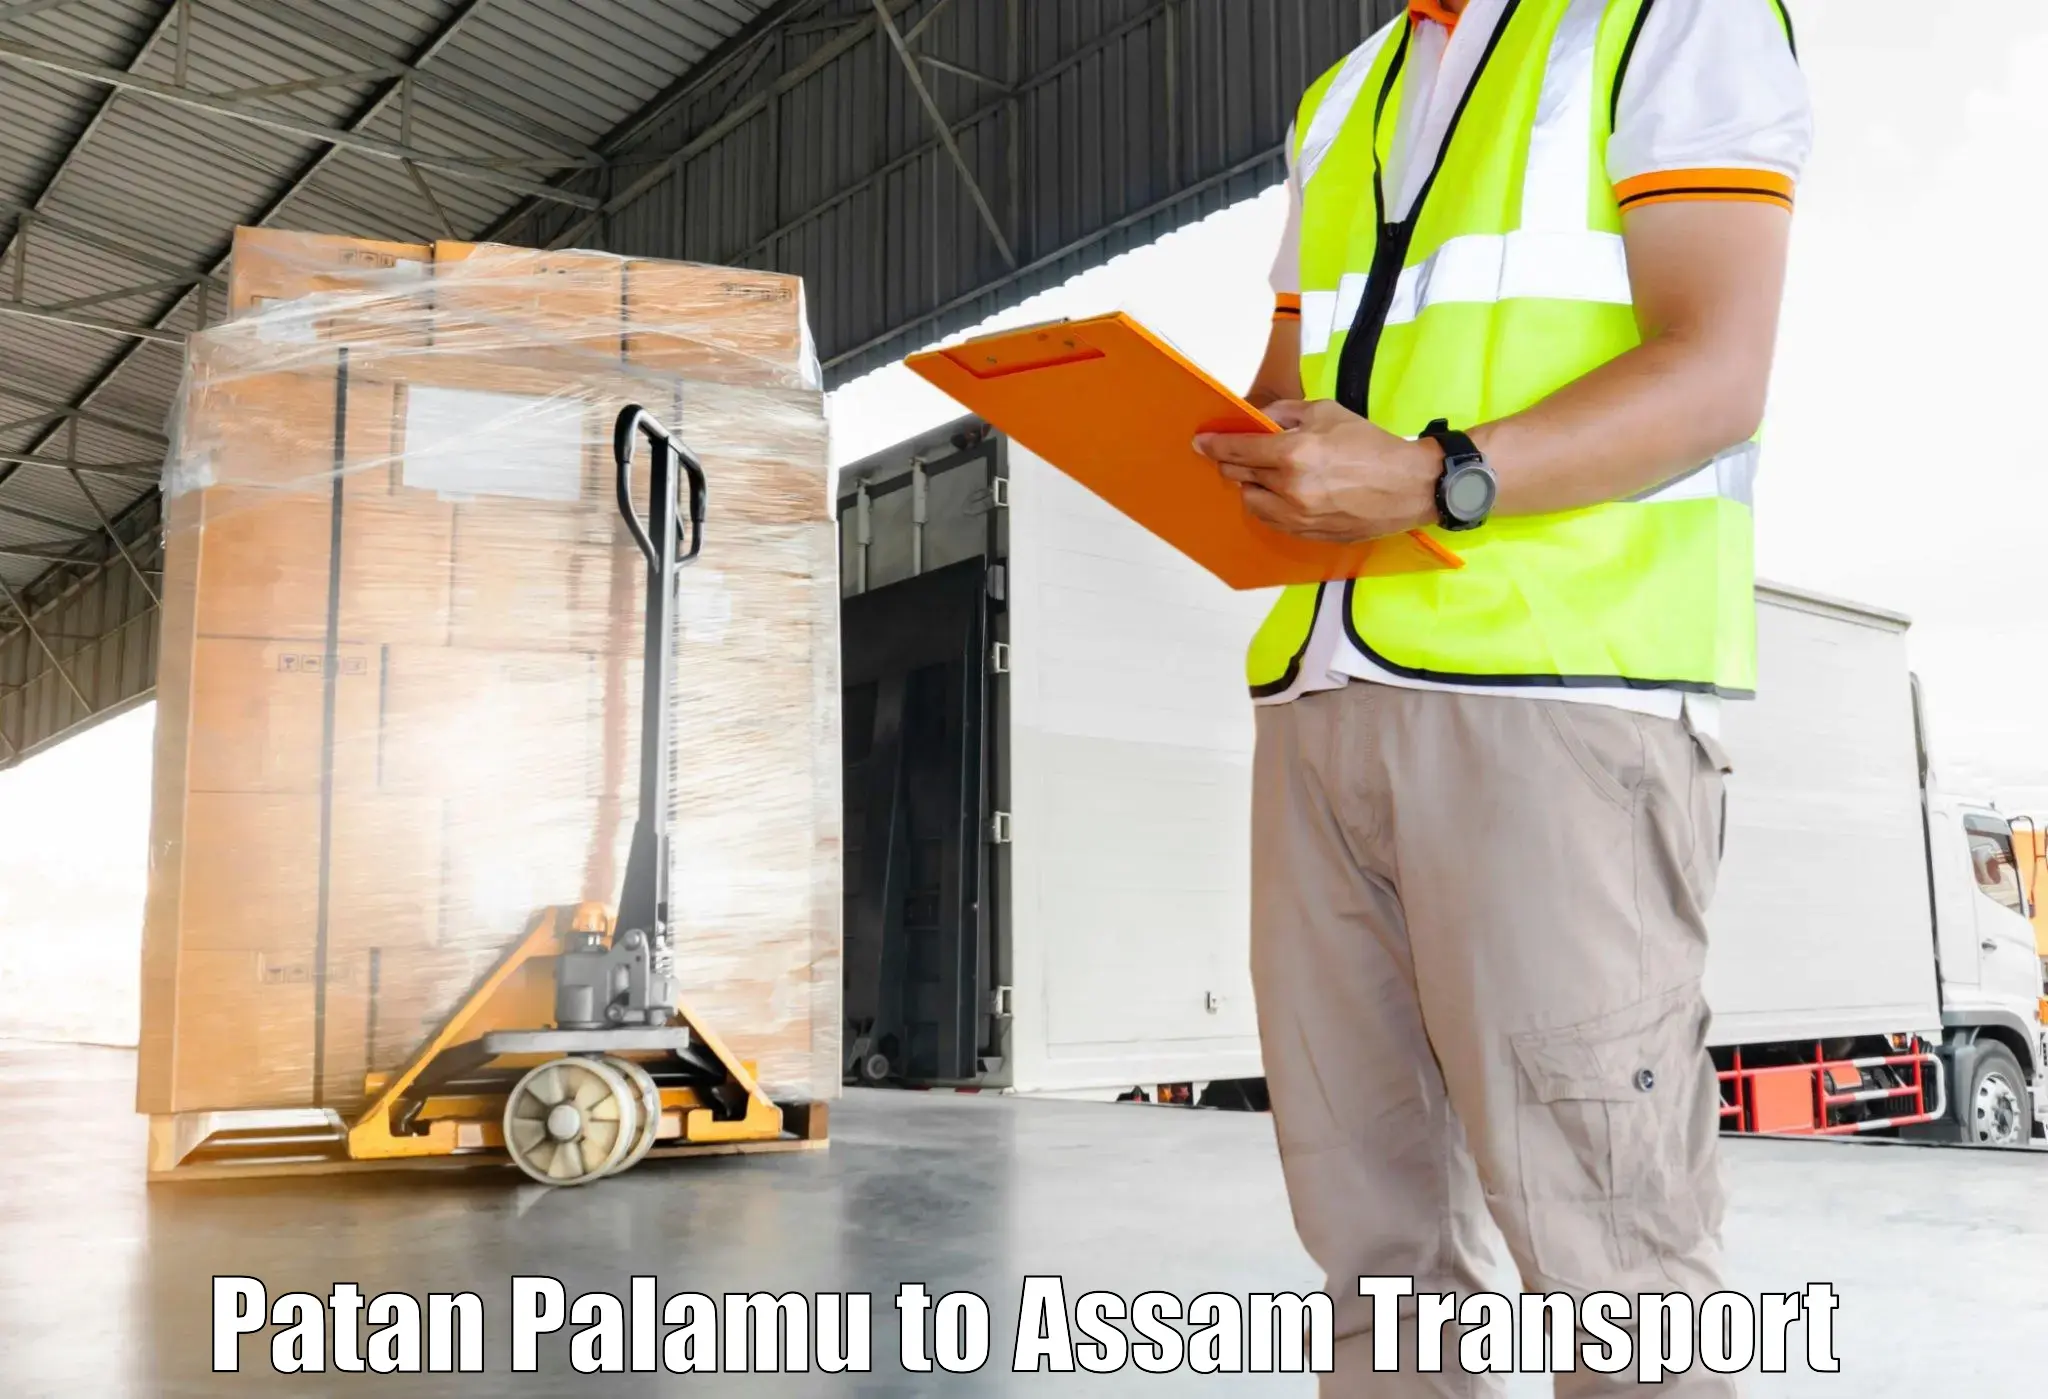 Lorry transport service Patan Palamu to Rajapara Khatajuli